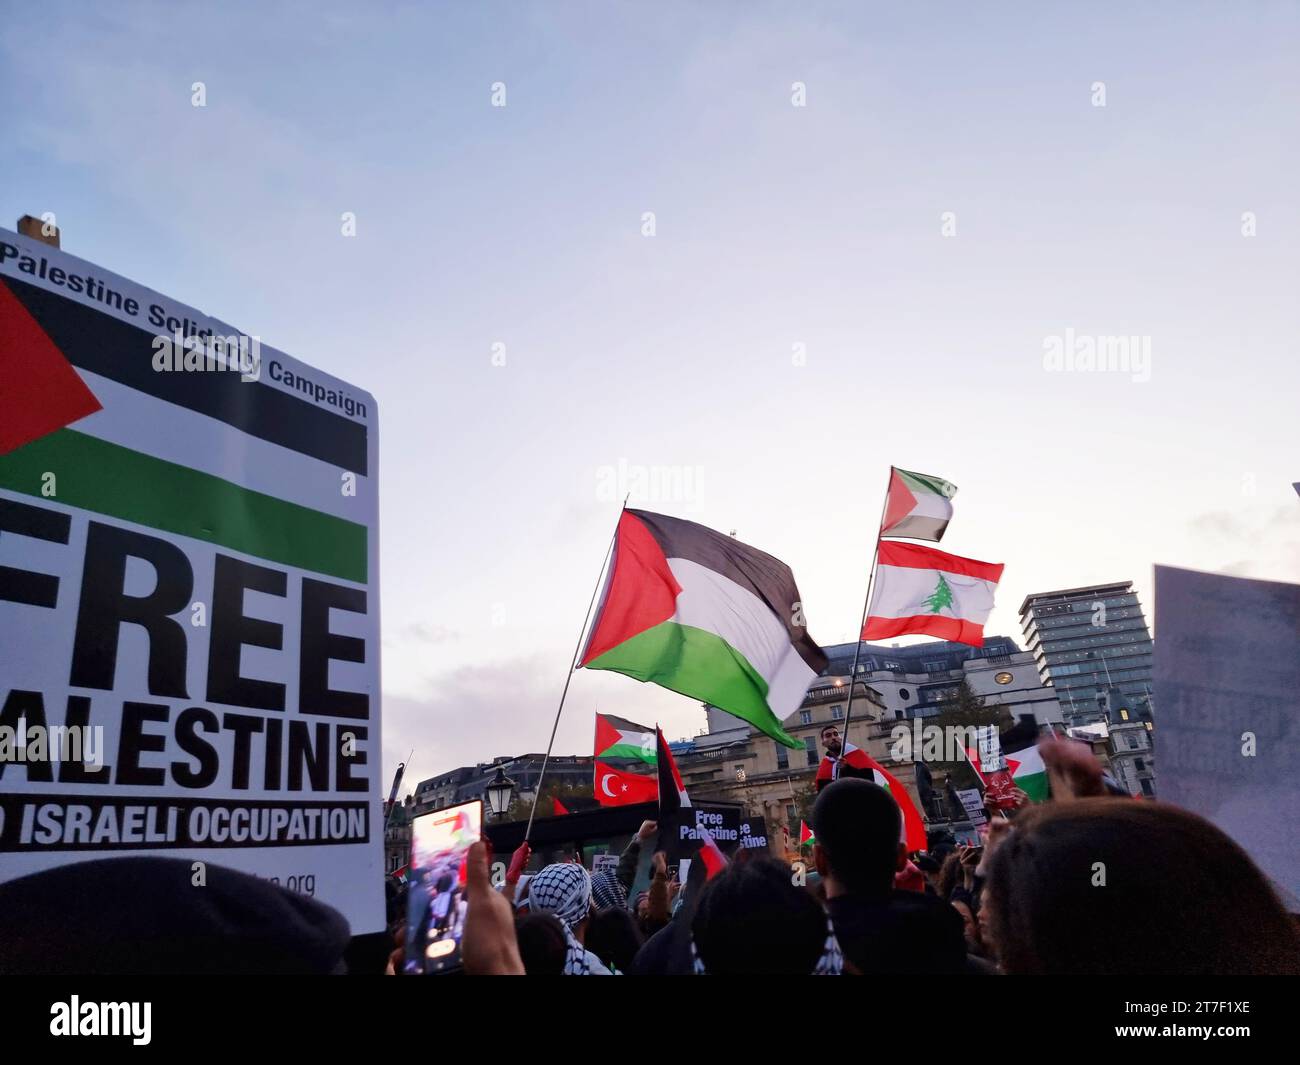 Migliaia di manifestanti alzano voce, portano cartelli e mostrano il loro sostegno ai palestinesi, a Trafalgar Square, nel centro di Londra. Regno Unito. Foto Stock